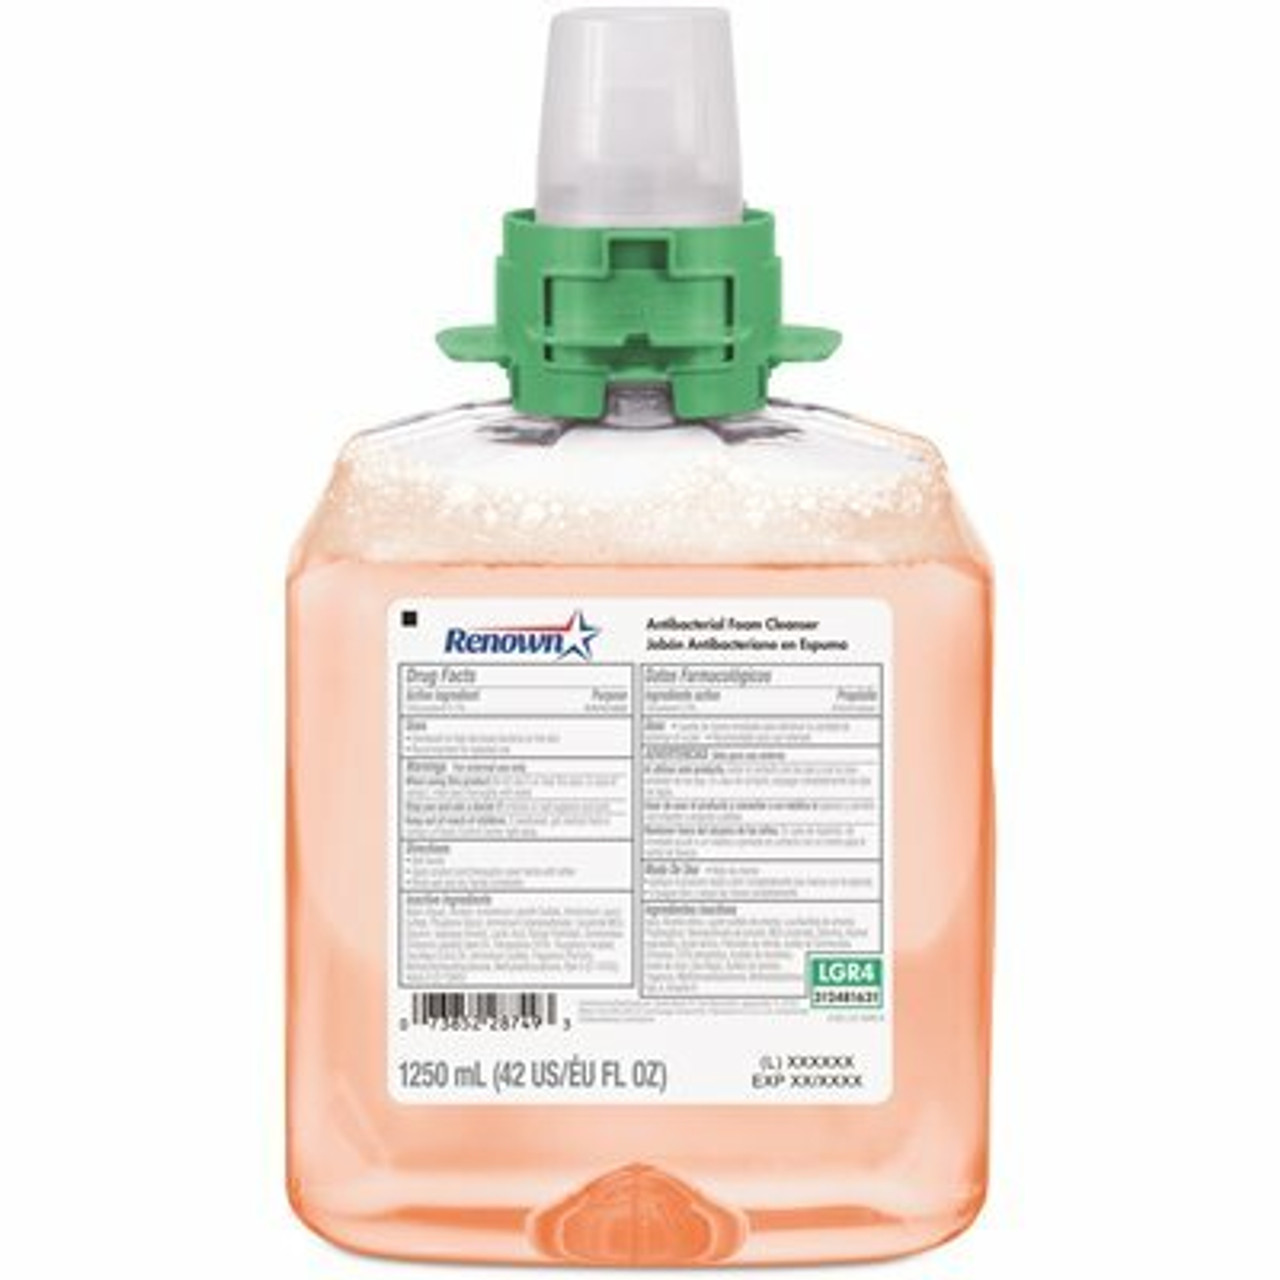 Renown Fmx 12 Dispenser Refill 1250 Ml Fruit Fragrance Antibacterial Foam Handwash Soap (4-Pack)